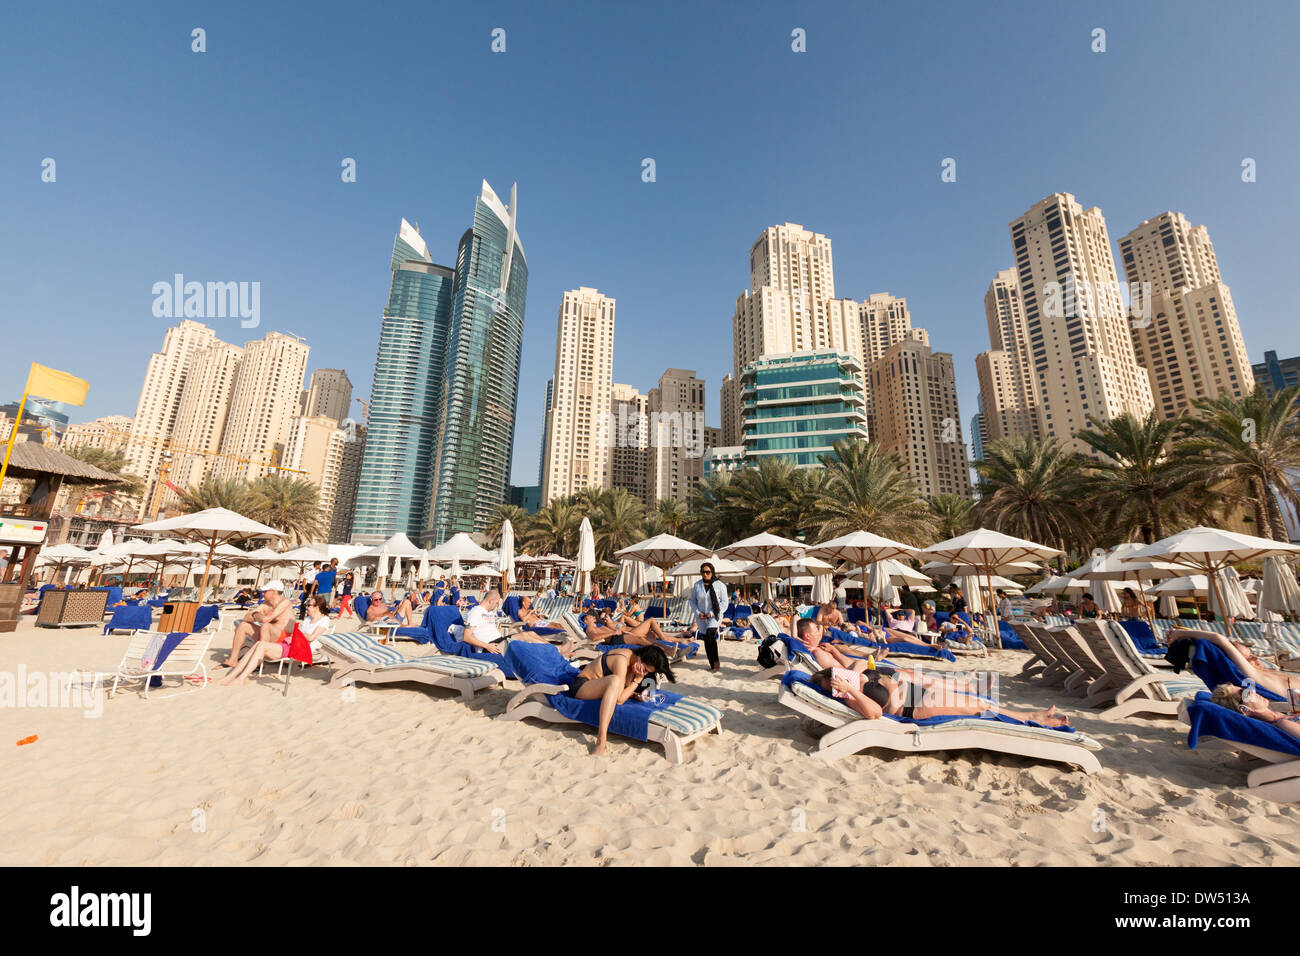 Dubai Urlaub; Massen von Touristen im Urlaub Sonnenbaden am Jumeirah Beach im Winter, Hilton Hotel, Dubai, VAE, Vereinigte Arabische Emirate, Naher Osten Stockfoto